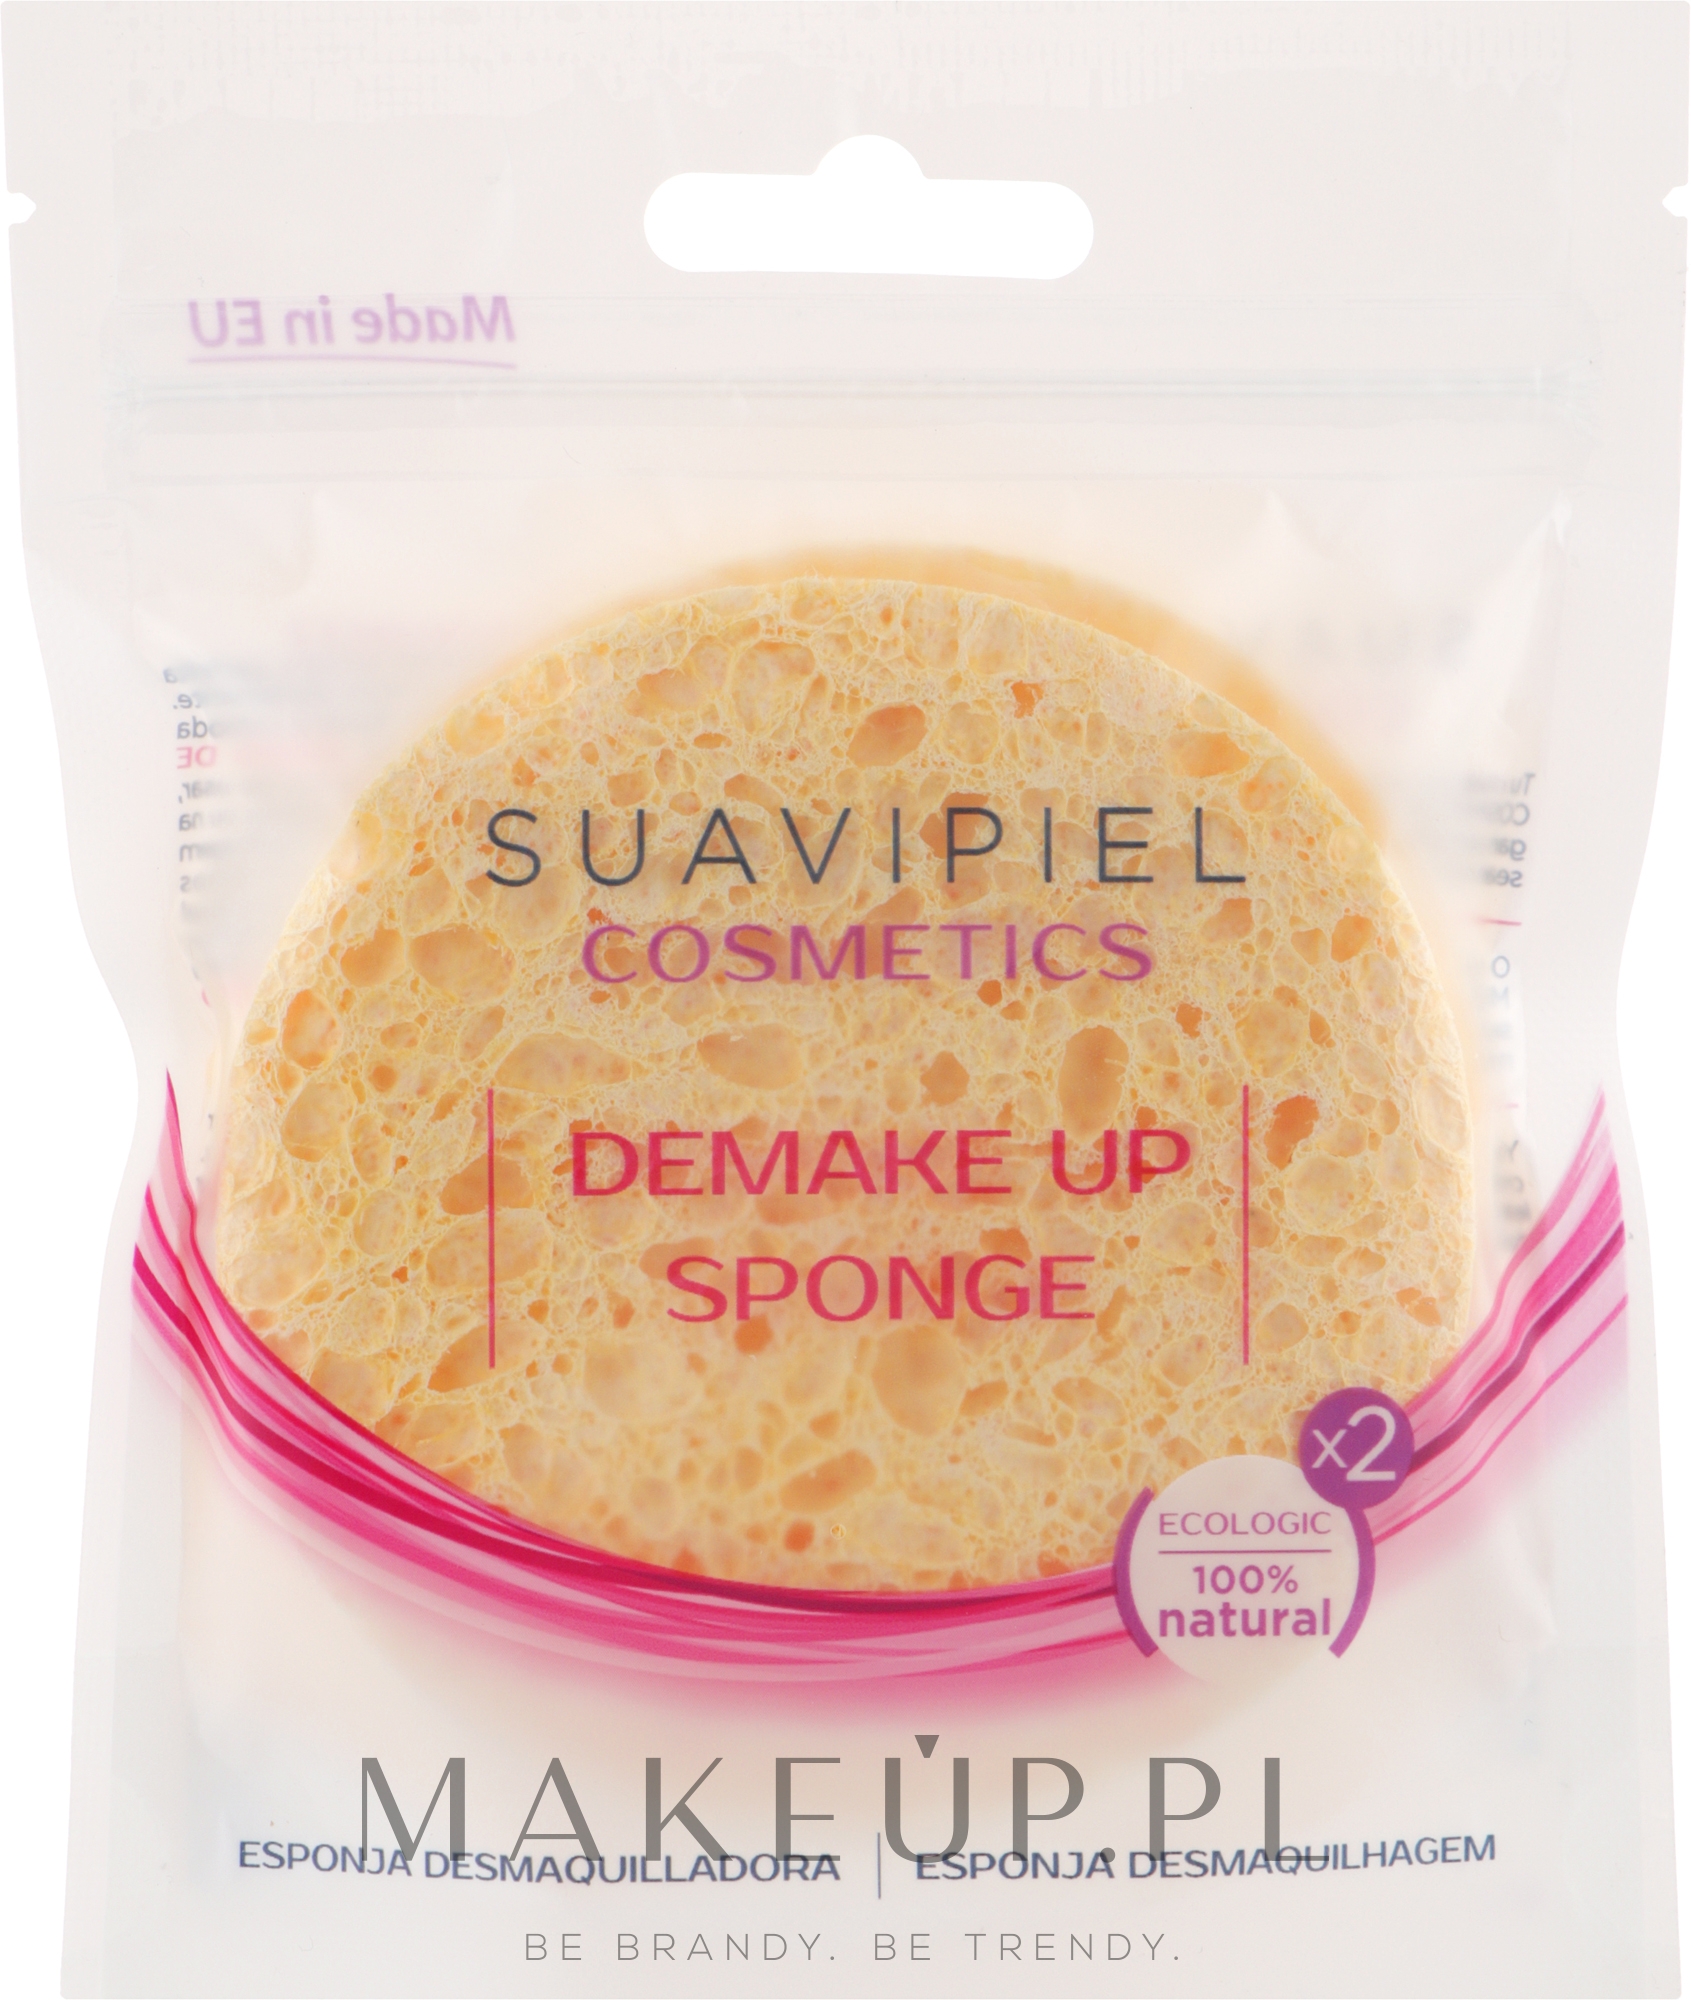 Gąbka do demakijażu - Suavipiel Cosmetics DemakeUp Sponge — Zdjęcie 2 szt.